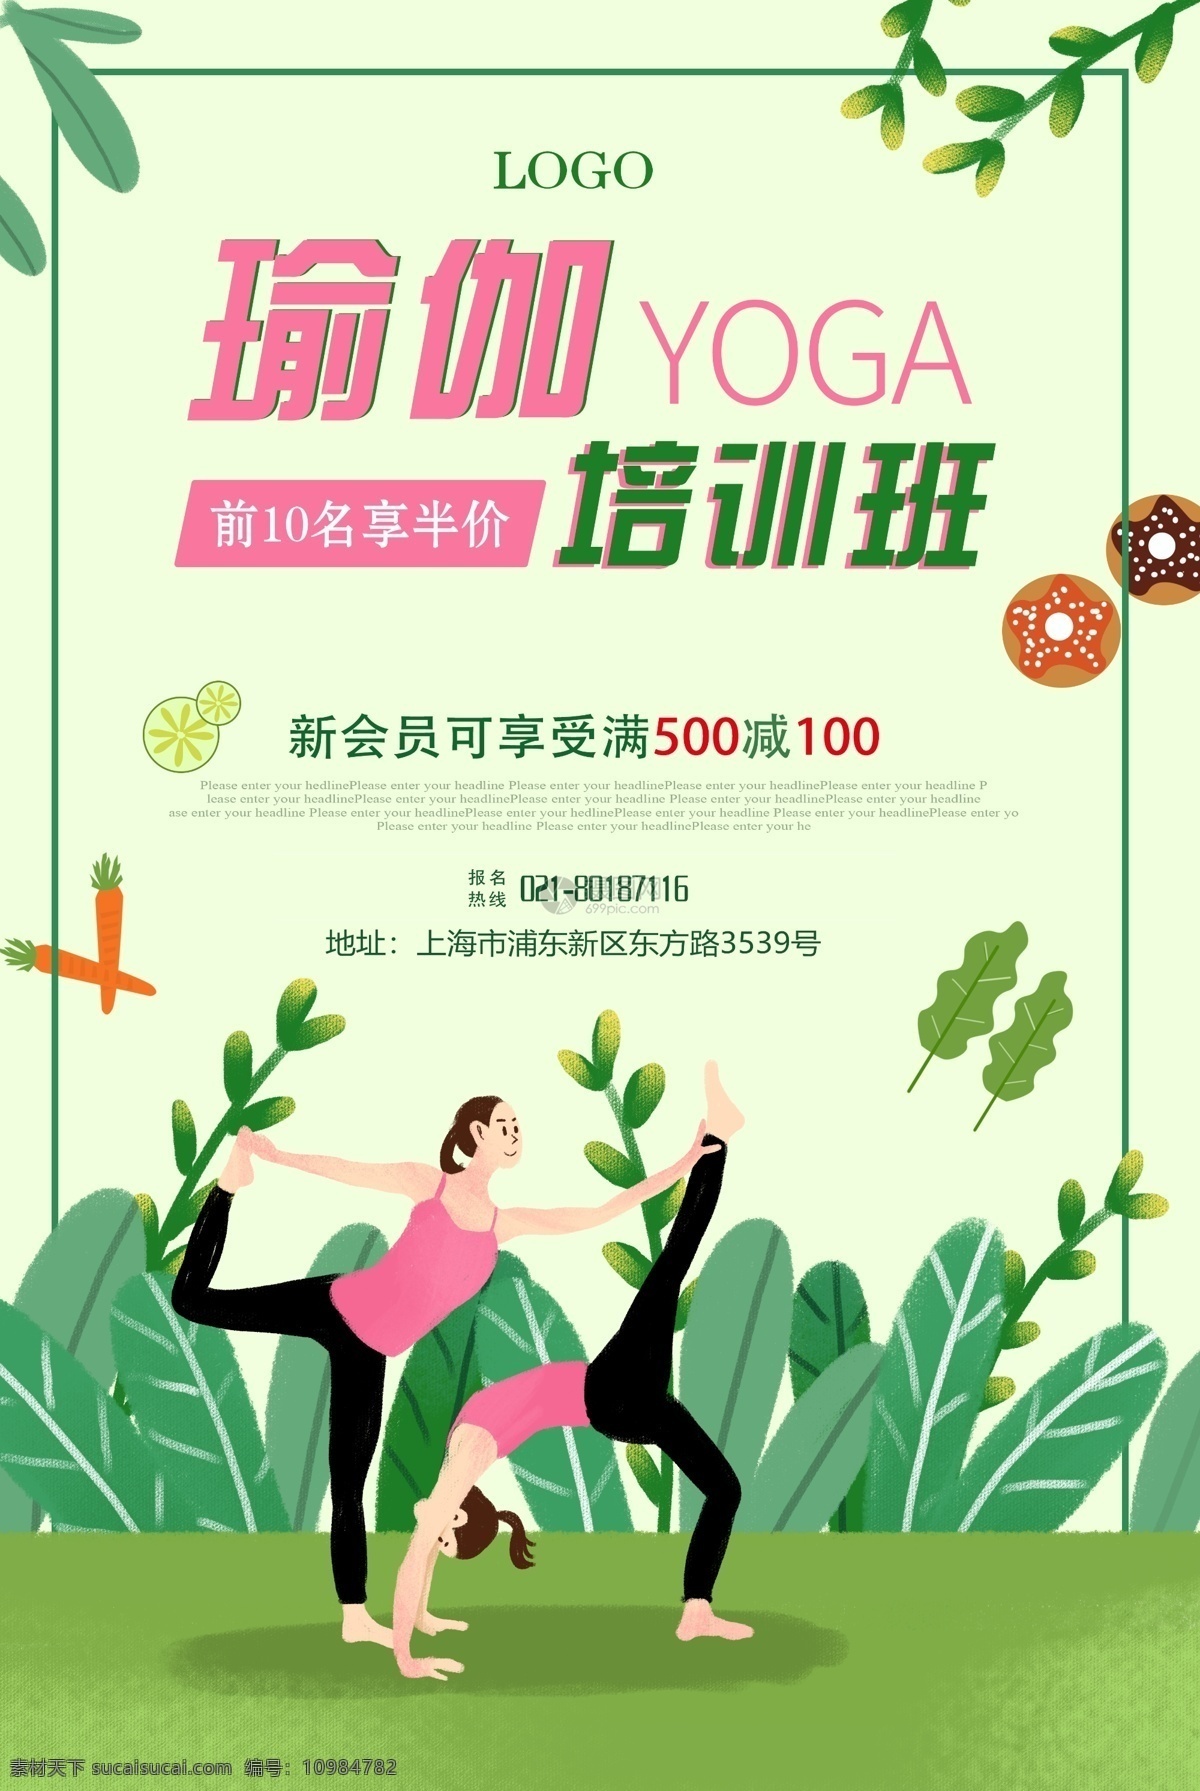 瑜伽 培训班 海报 yoga 瑜伽馆 瑜伽养生 瑜伽身材 瑜伽教学 魅力瑜伽 好身材 形体 有氧运动 瑜伽海报